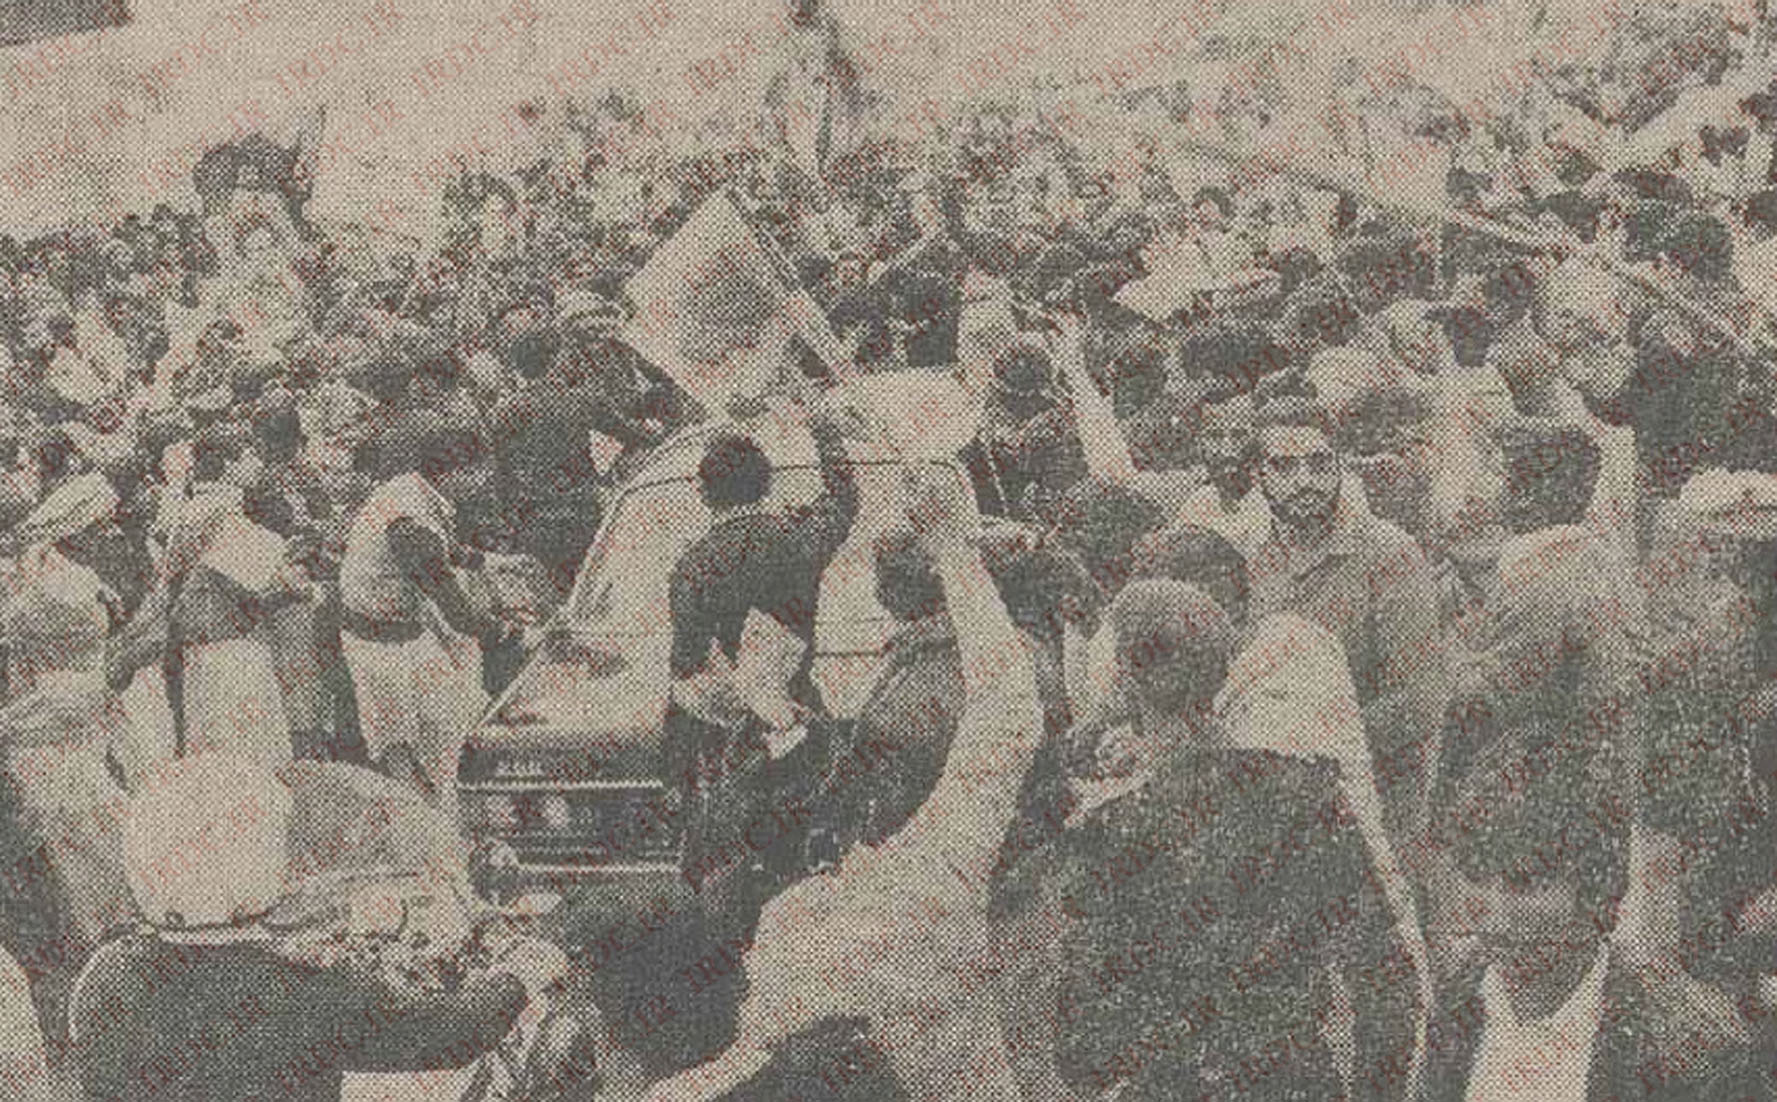 بازخوانی استقبال تاریخی مردم پاکستان از آیت‌الله خامنه‌ای در سال 64